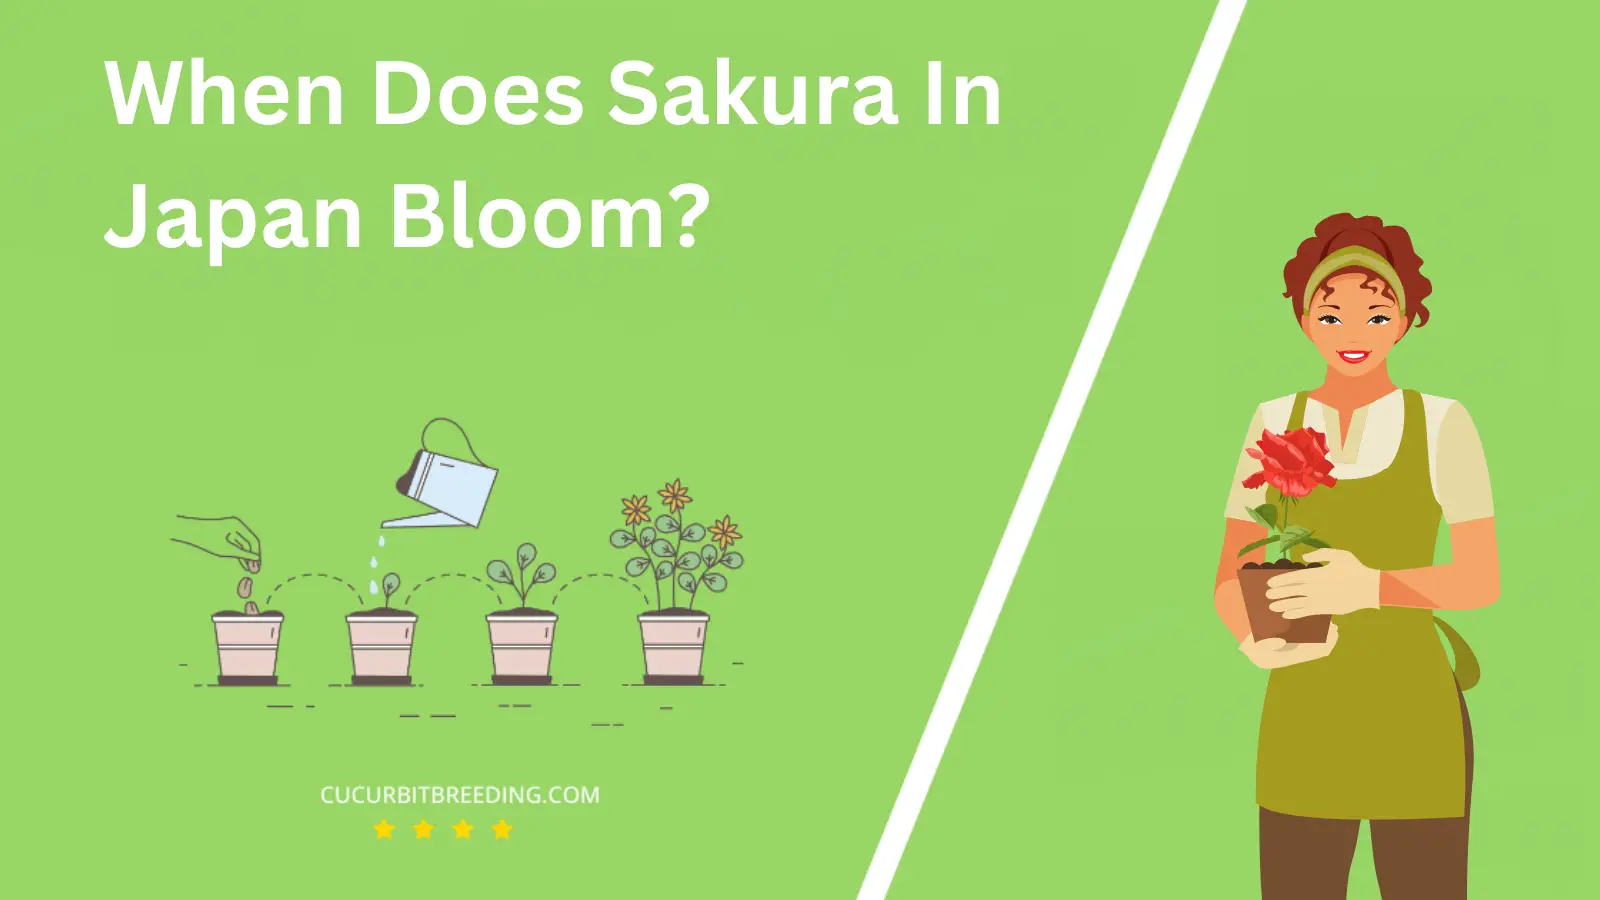 When Does Sakura In Japan Bloom?